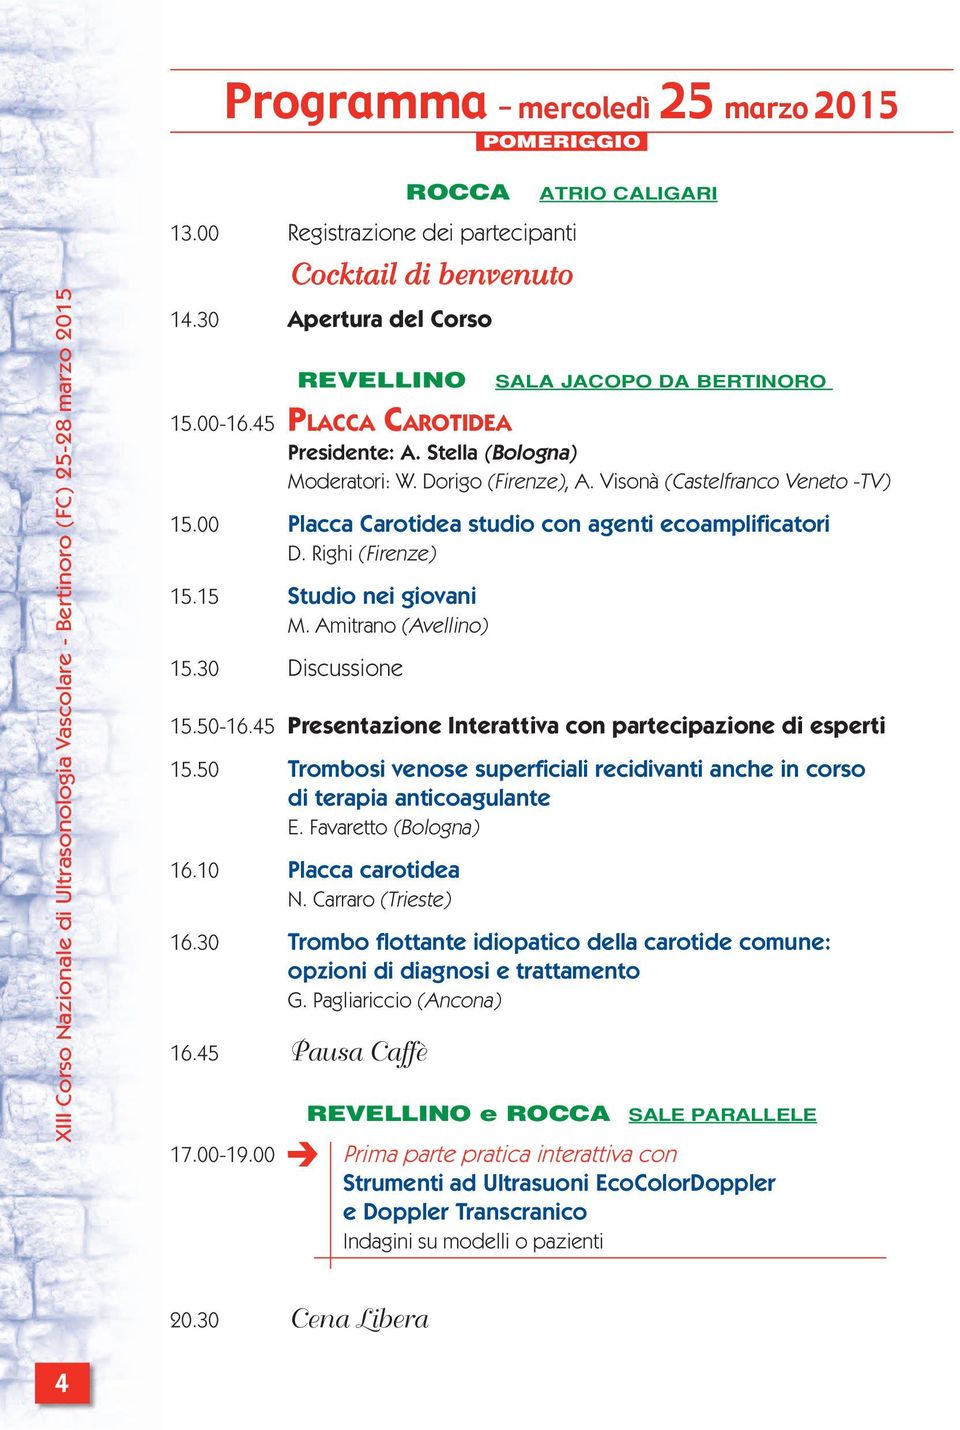 Righi (Firenze) 15.15 Studio nei giovani M. Amitrano (Avellino) 15.30 Discussione 15.50-16.45 Presentazione Interattiva con partecipazione di esperti 15.